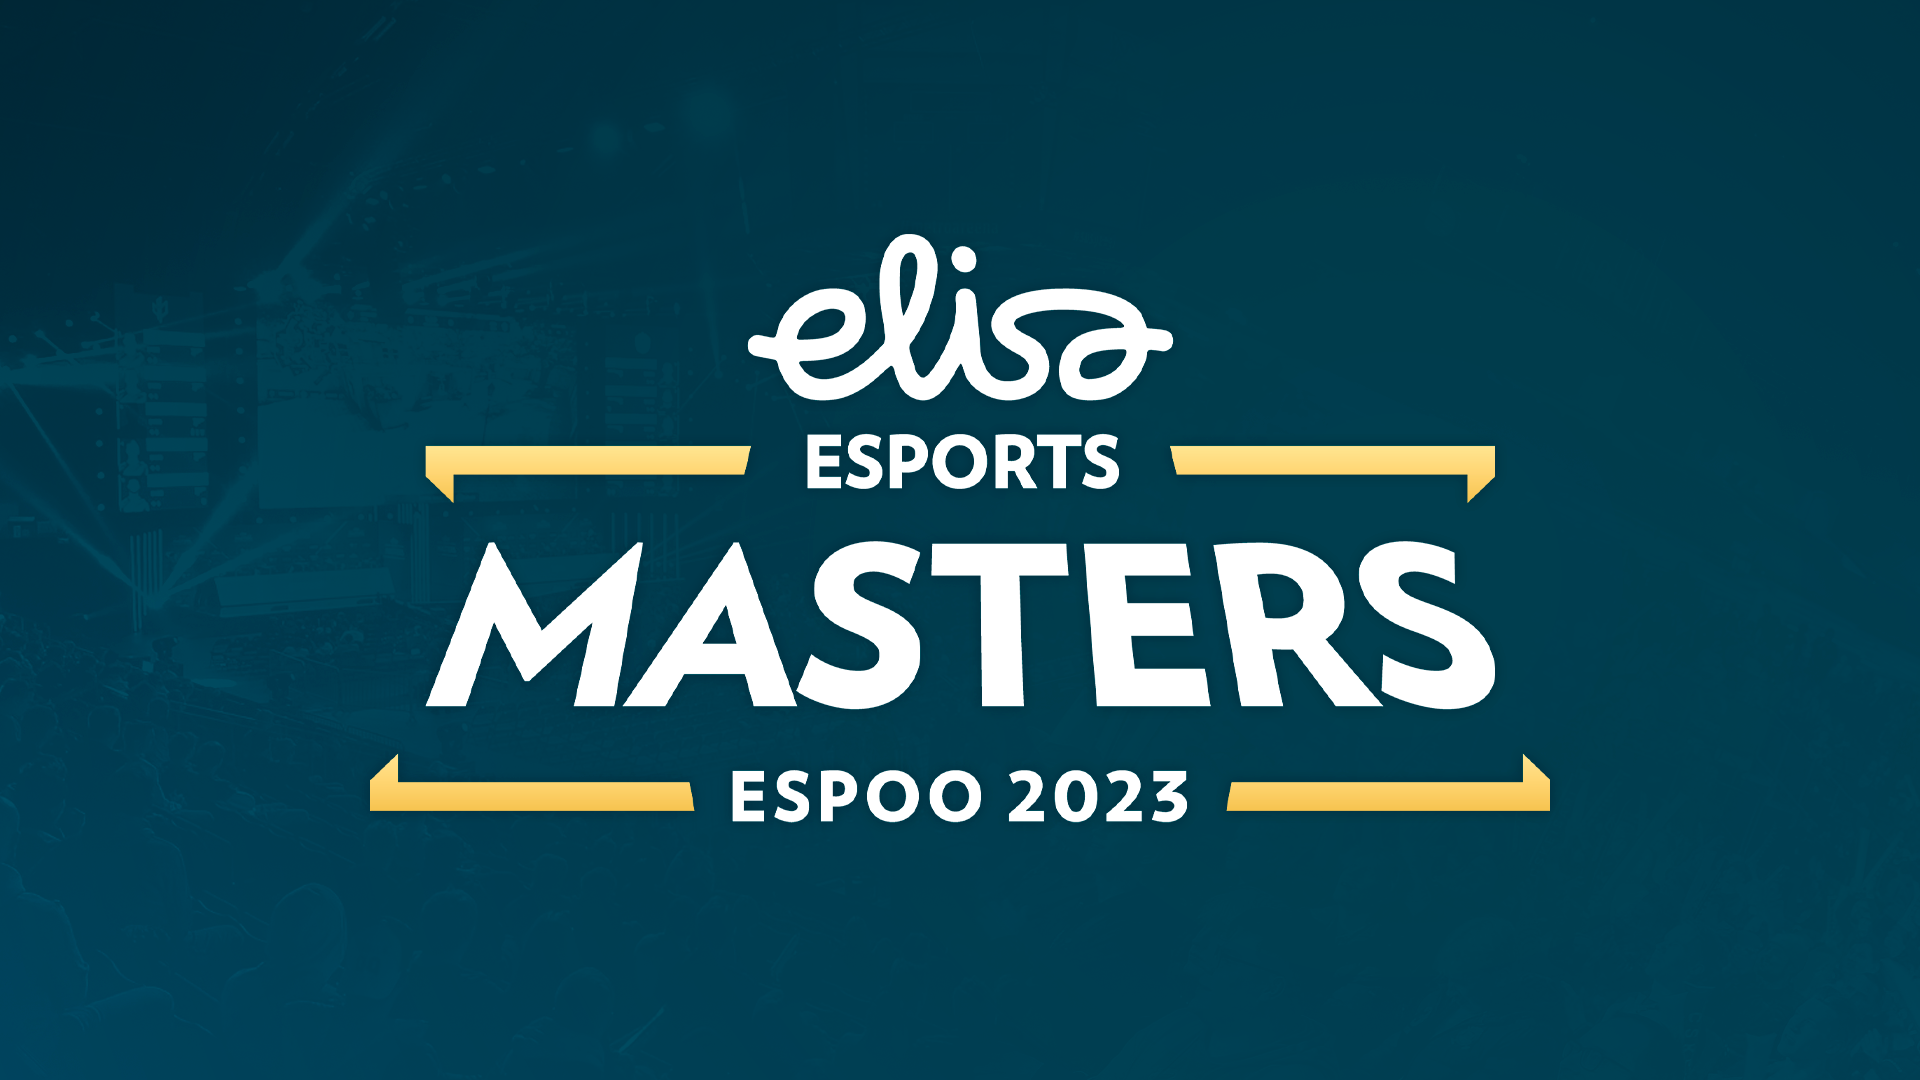 Apeks обыграла FURIA в рамках групповой стадии на Elisa Masters Espoo 2023